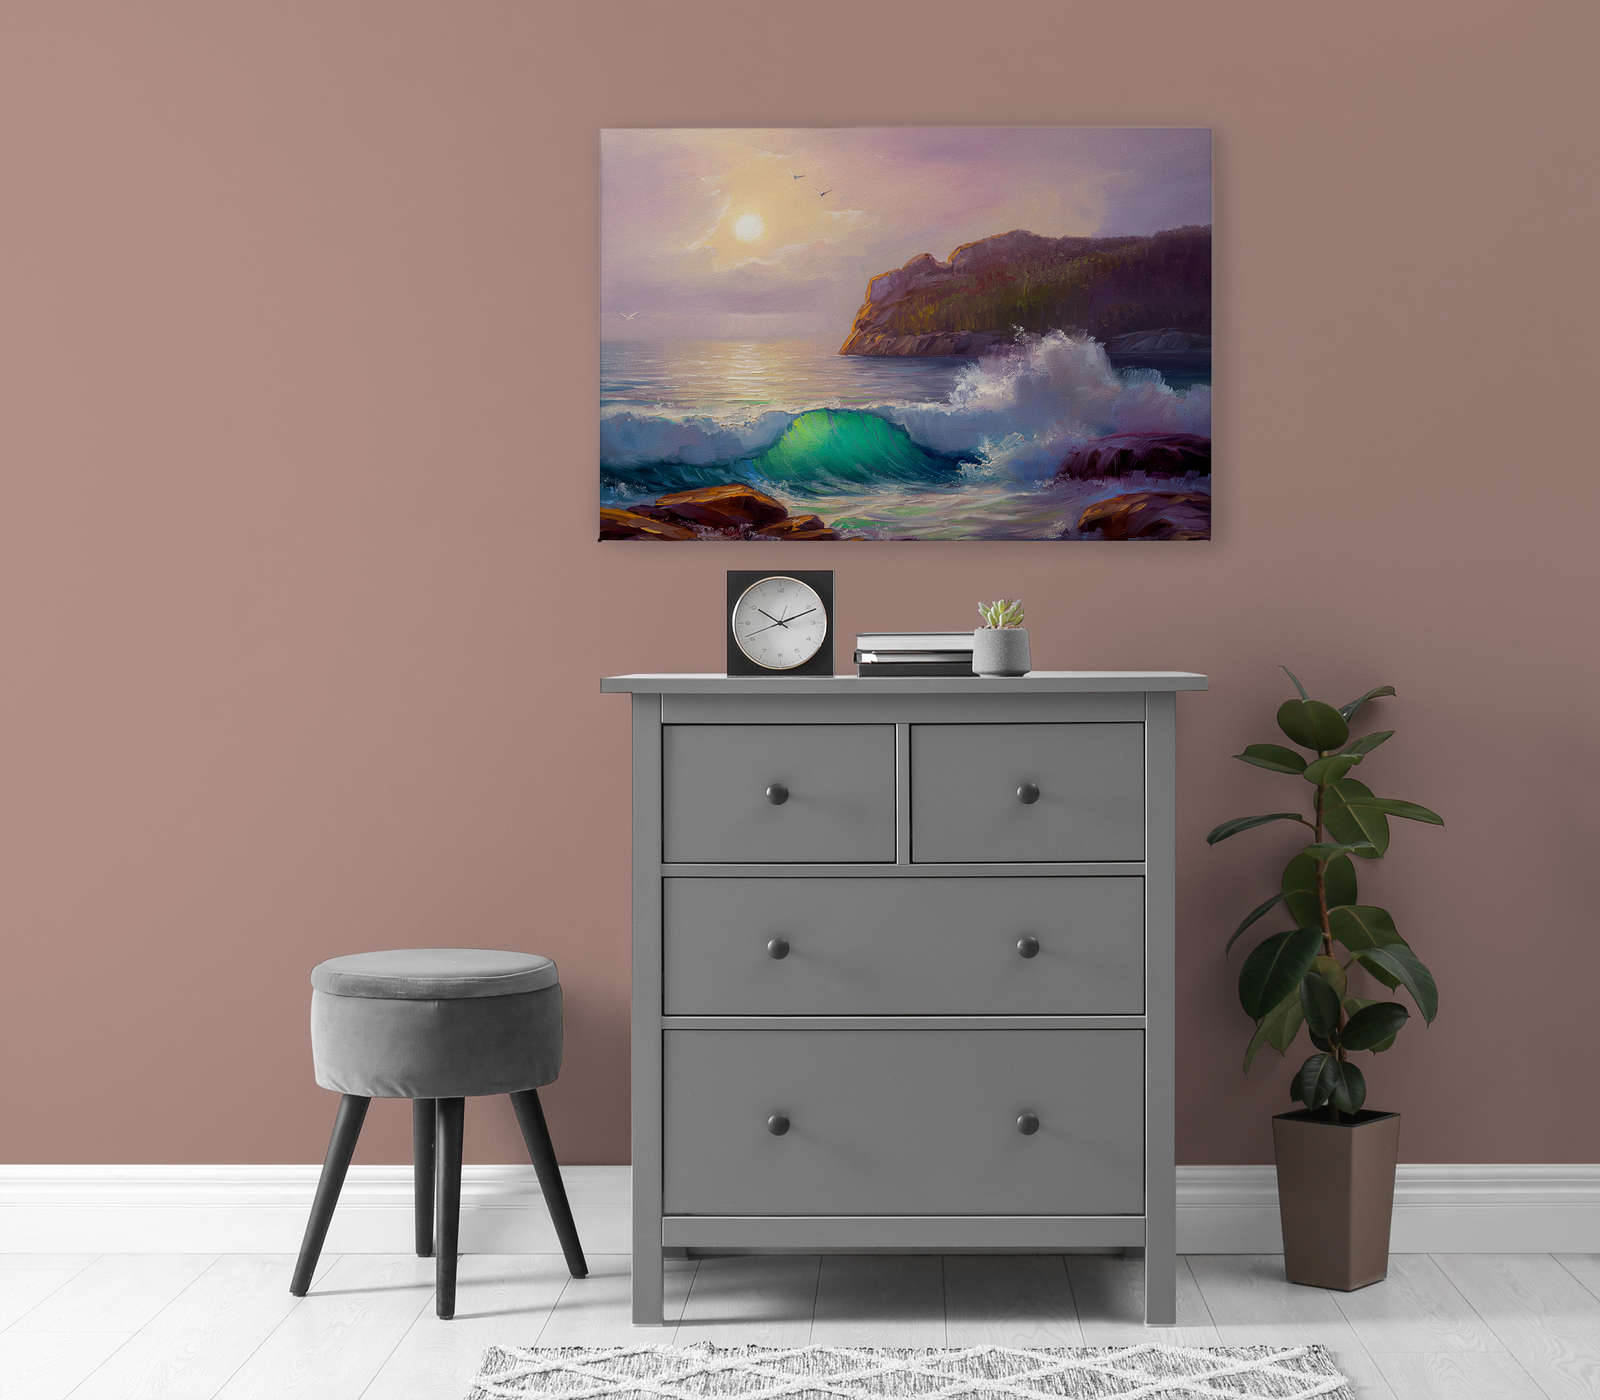             Peinture sur toile d'une côte au lever du soleil - 0,90 m x 0,60 m
        